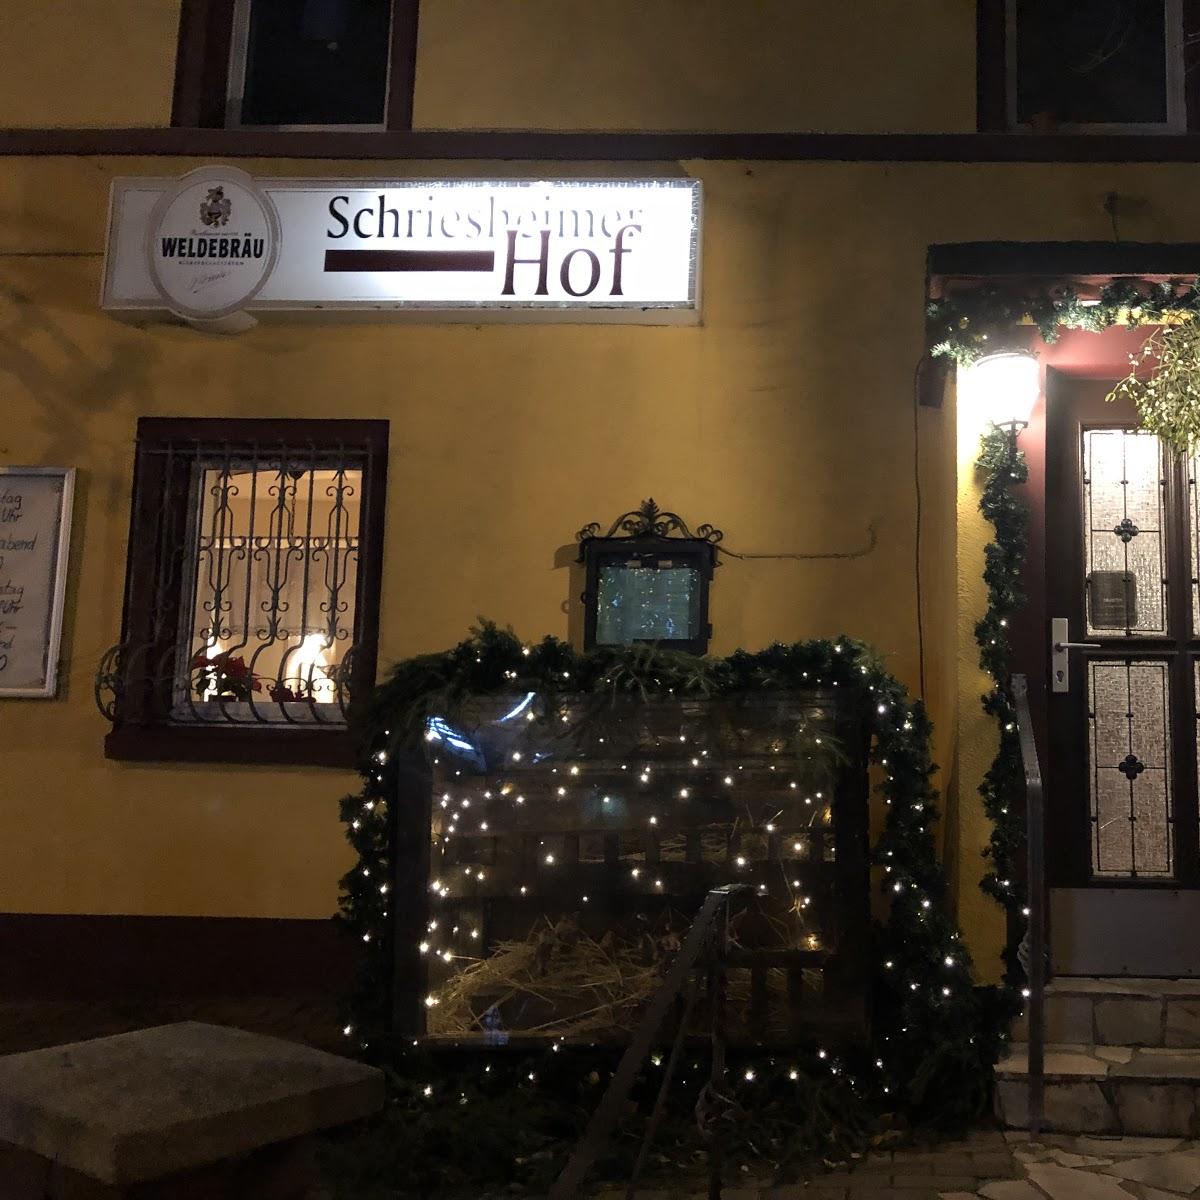 Restaurant "Landgasthof Schriesheimer Hof" in Wilhelmsfeld